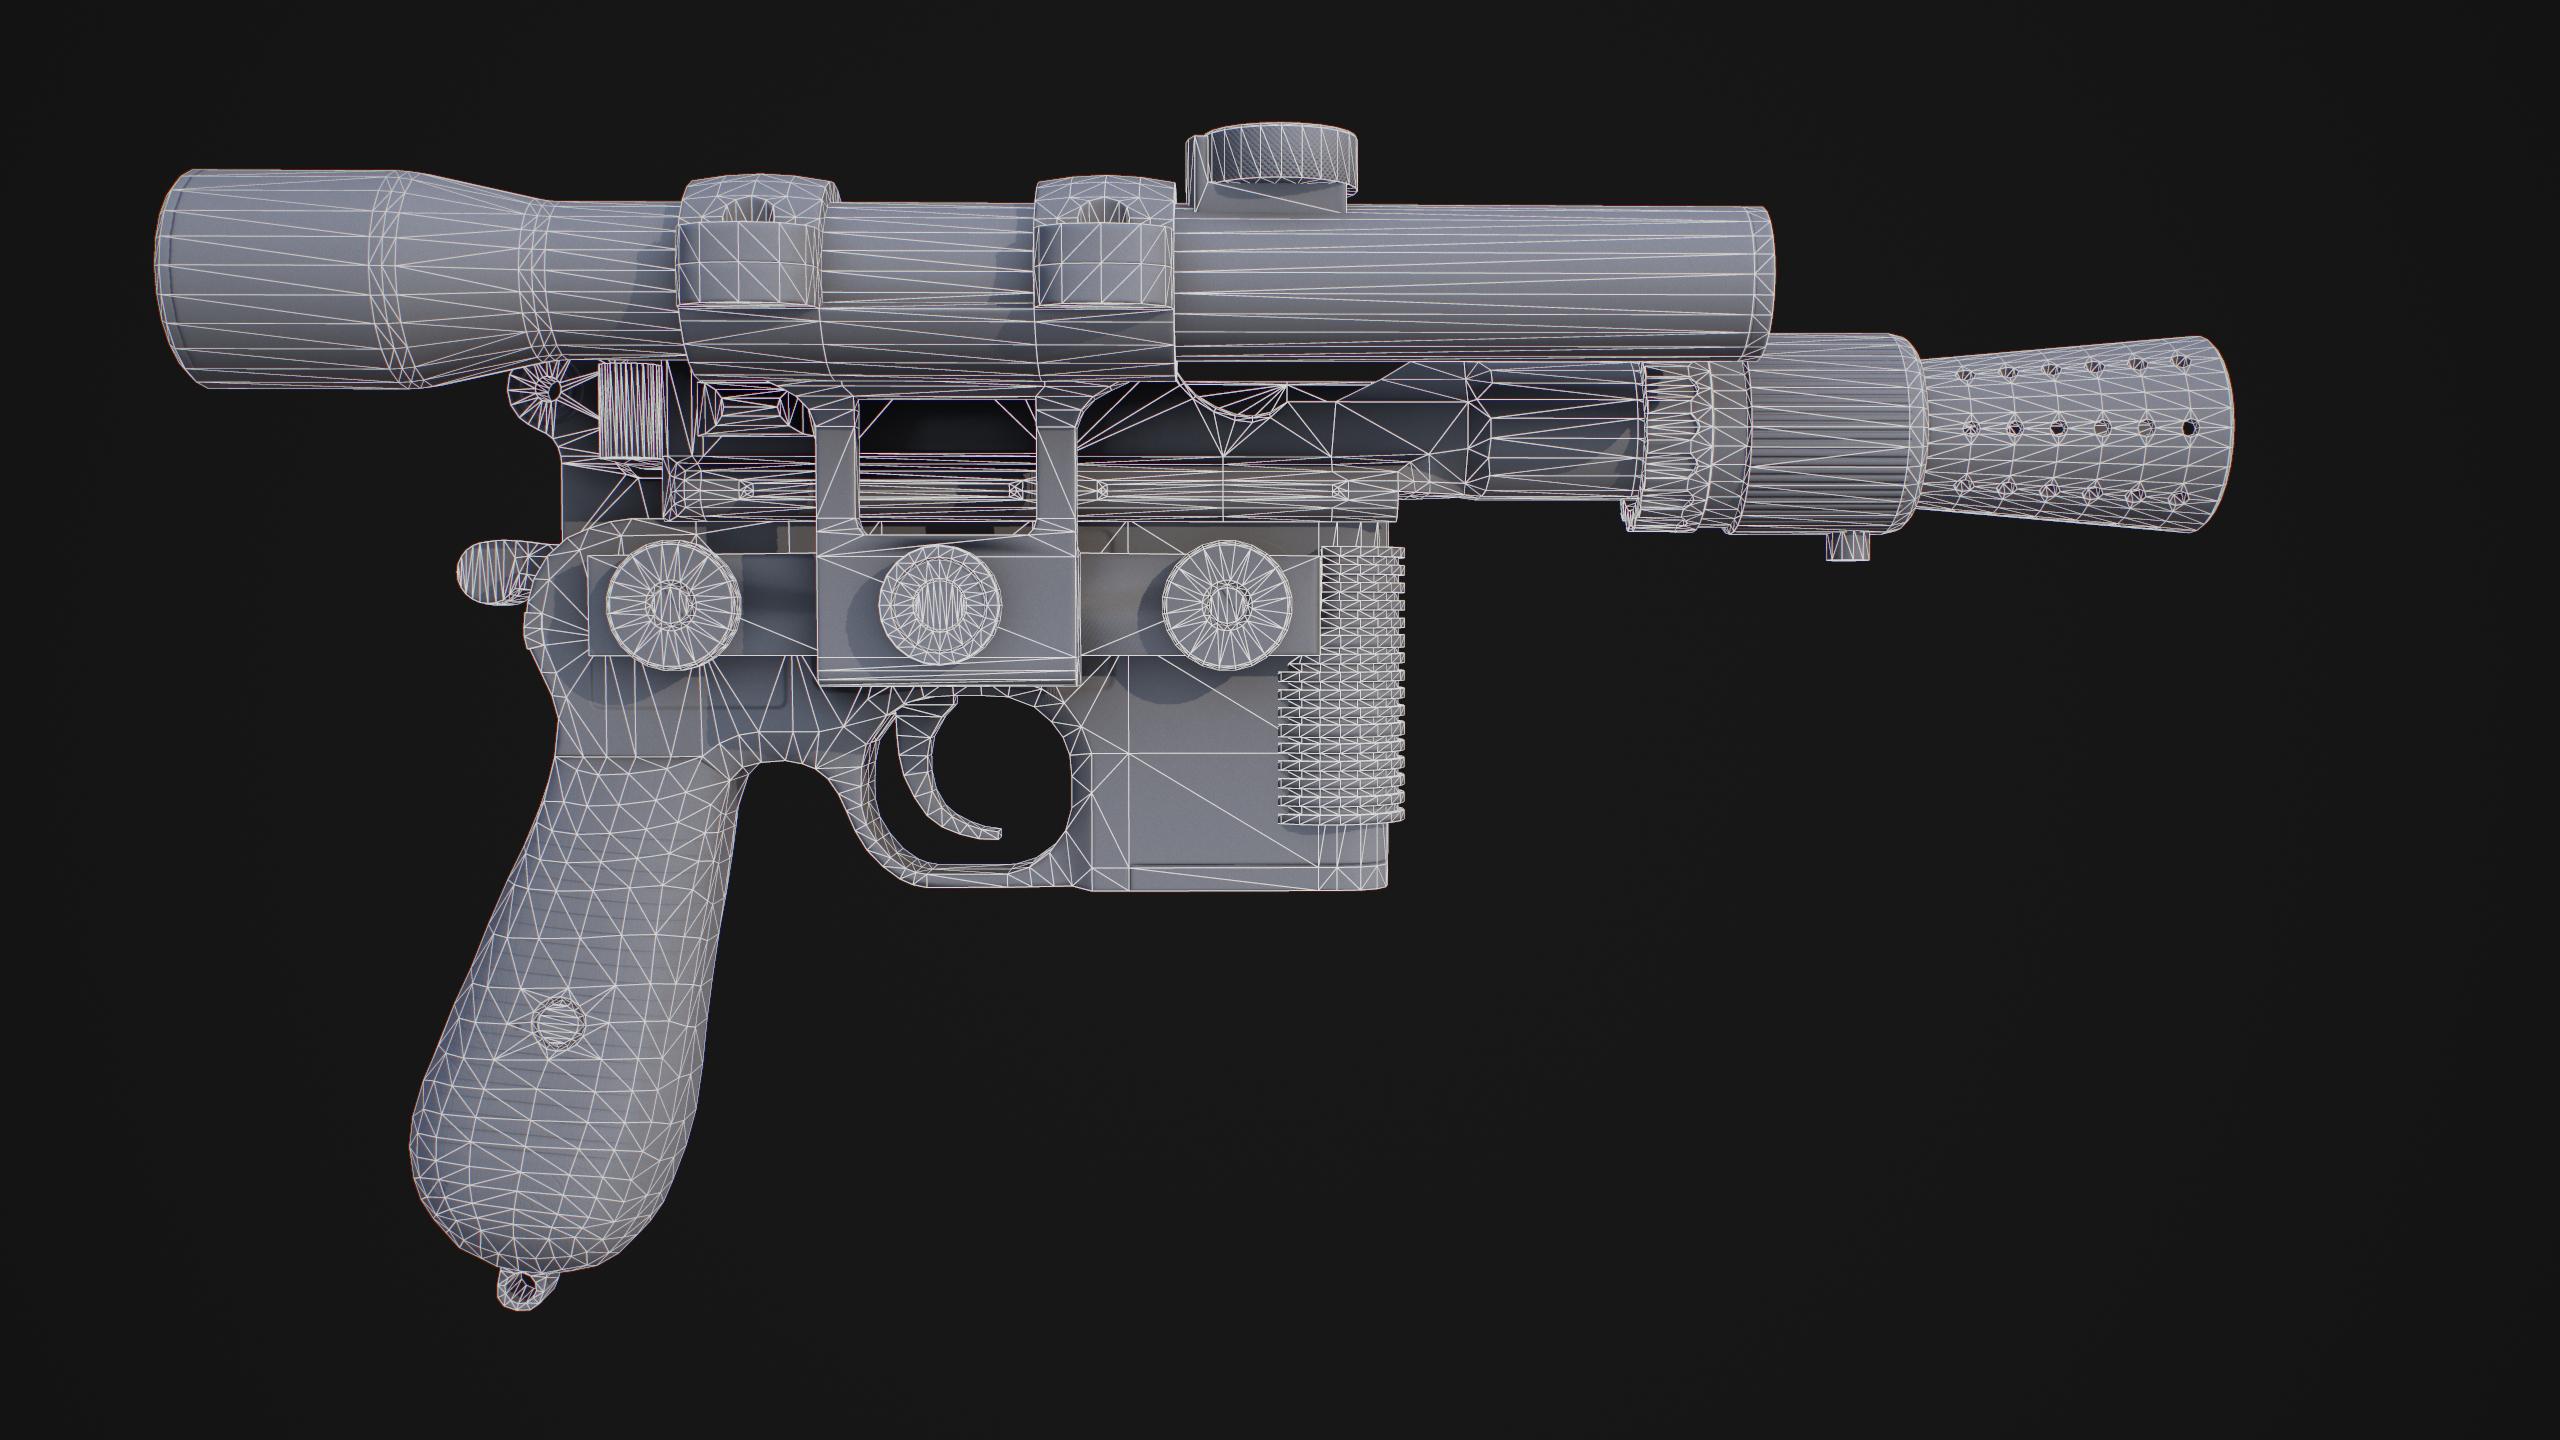 Wireframe render of a DL-44 blaster